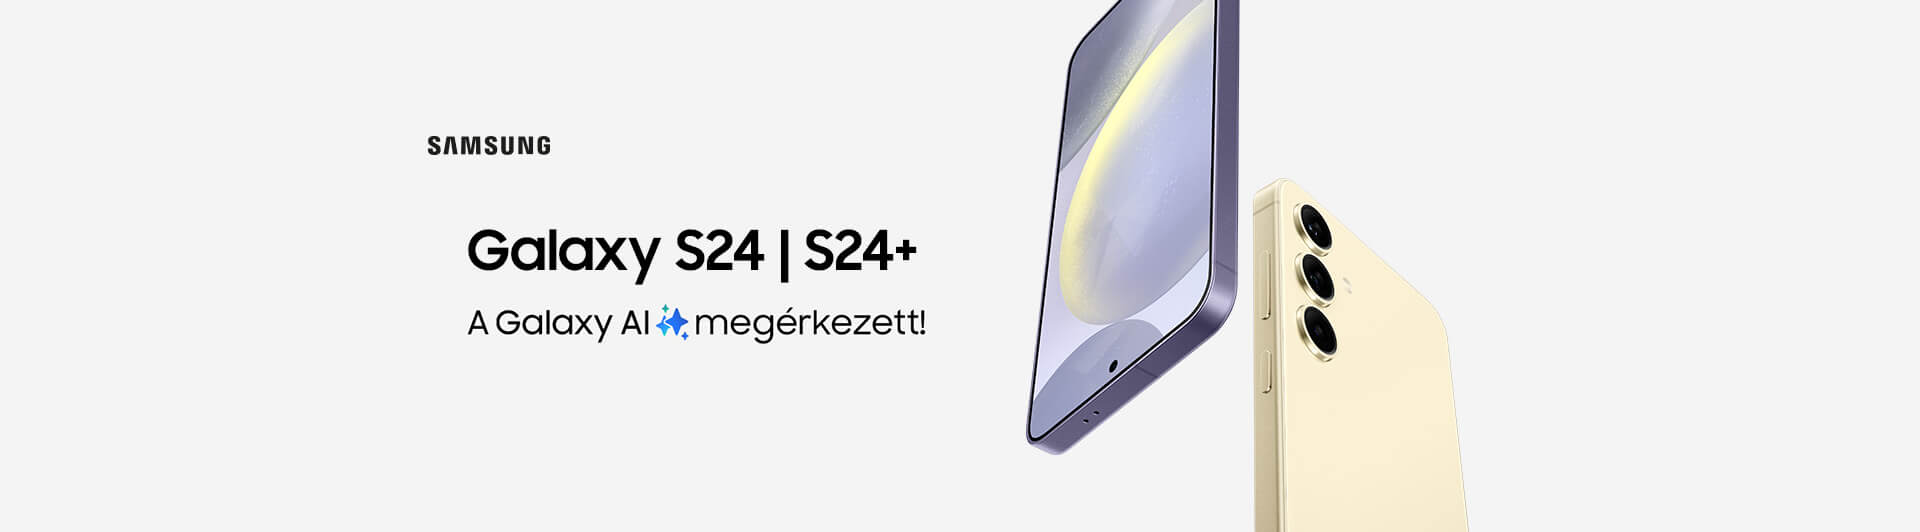 Samsung       Galaxy S24 és S24+ | A Galaxy AI megérkezett